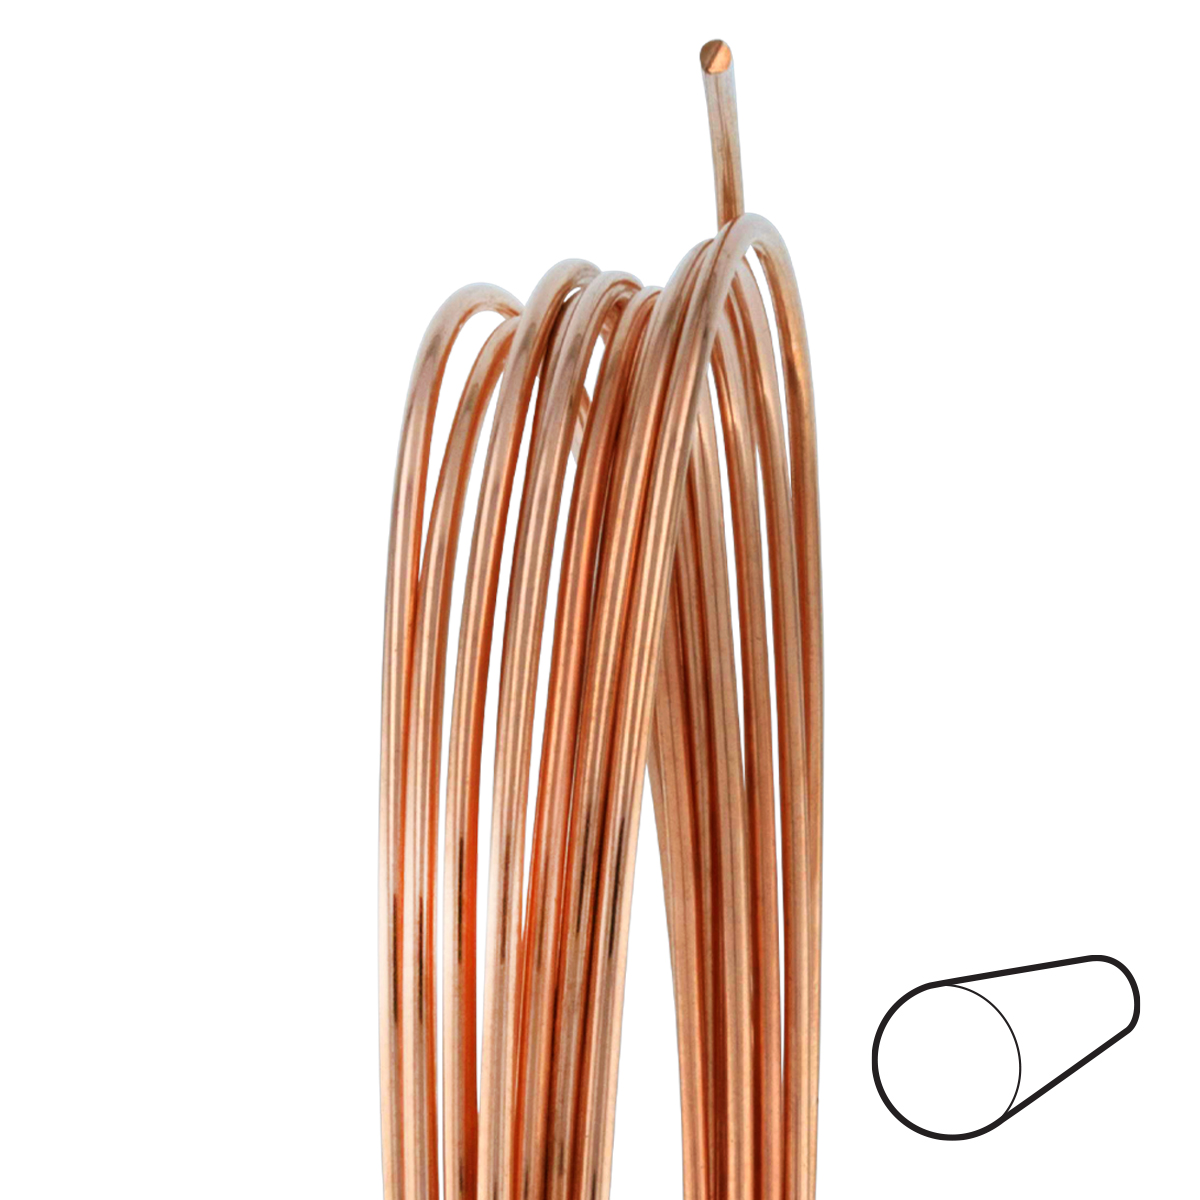 26 Gauge Round Dead Soft Copper Wire: Wire Jewelry, Wire Wrap Tutorials